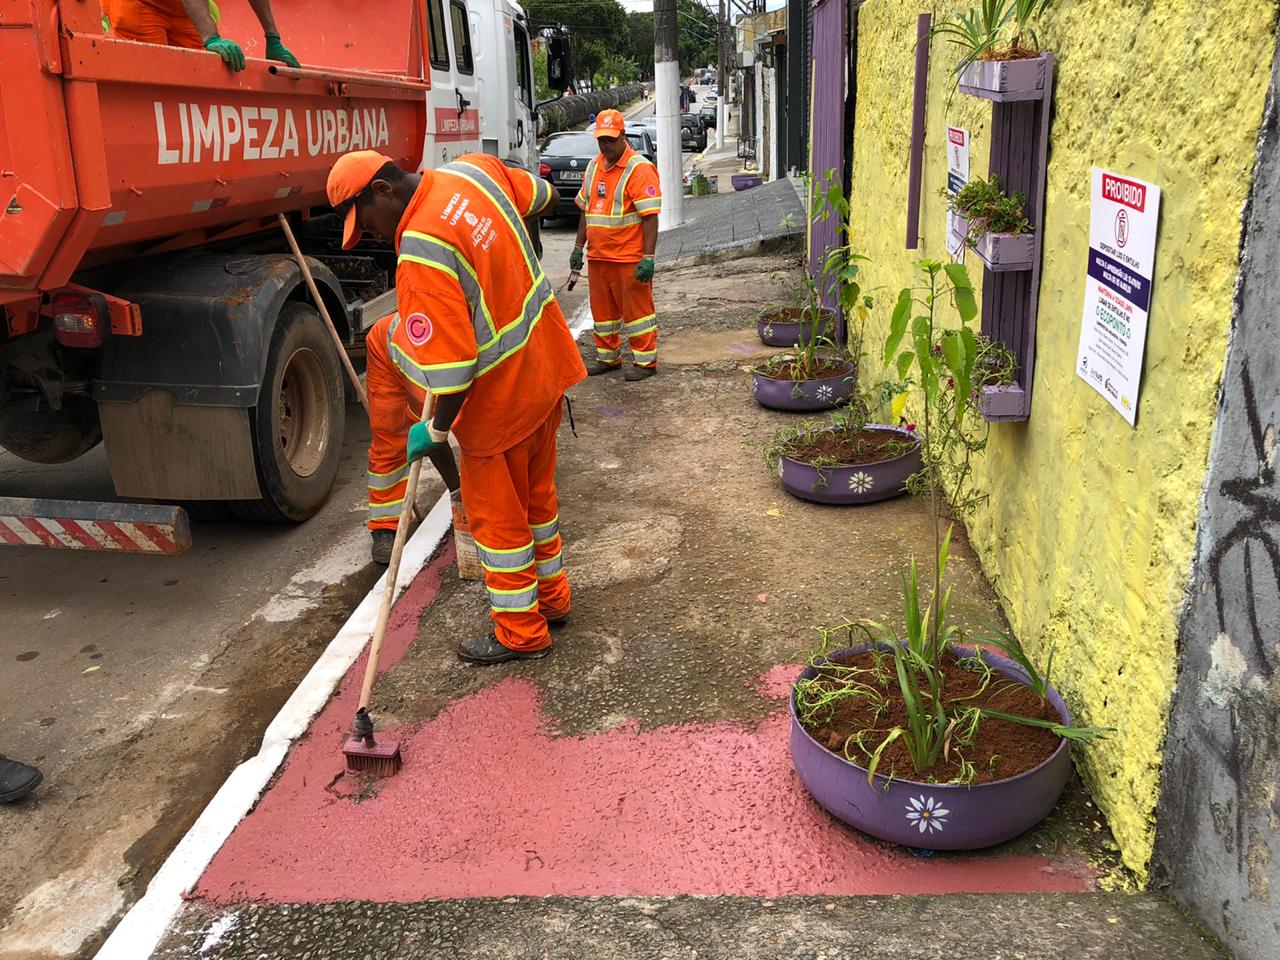 #PraCegoVer visualiza-se funcionários realizando a pintura da calçada do local que está sendo revitalizado. A cor sendo pintada é vinho. Visualiza-se mudas de plantas plantadas no chão.